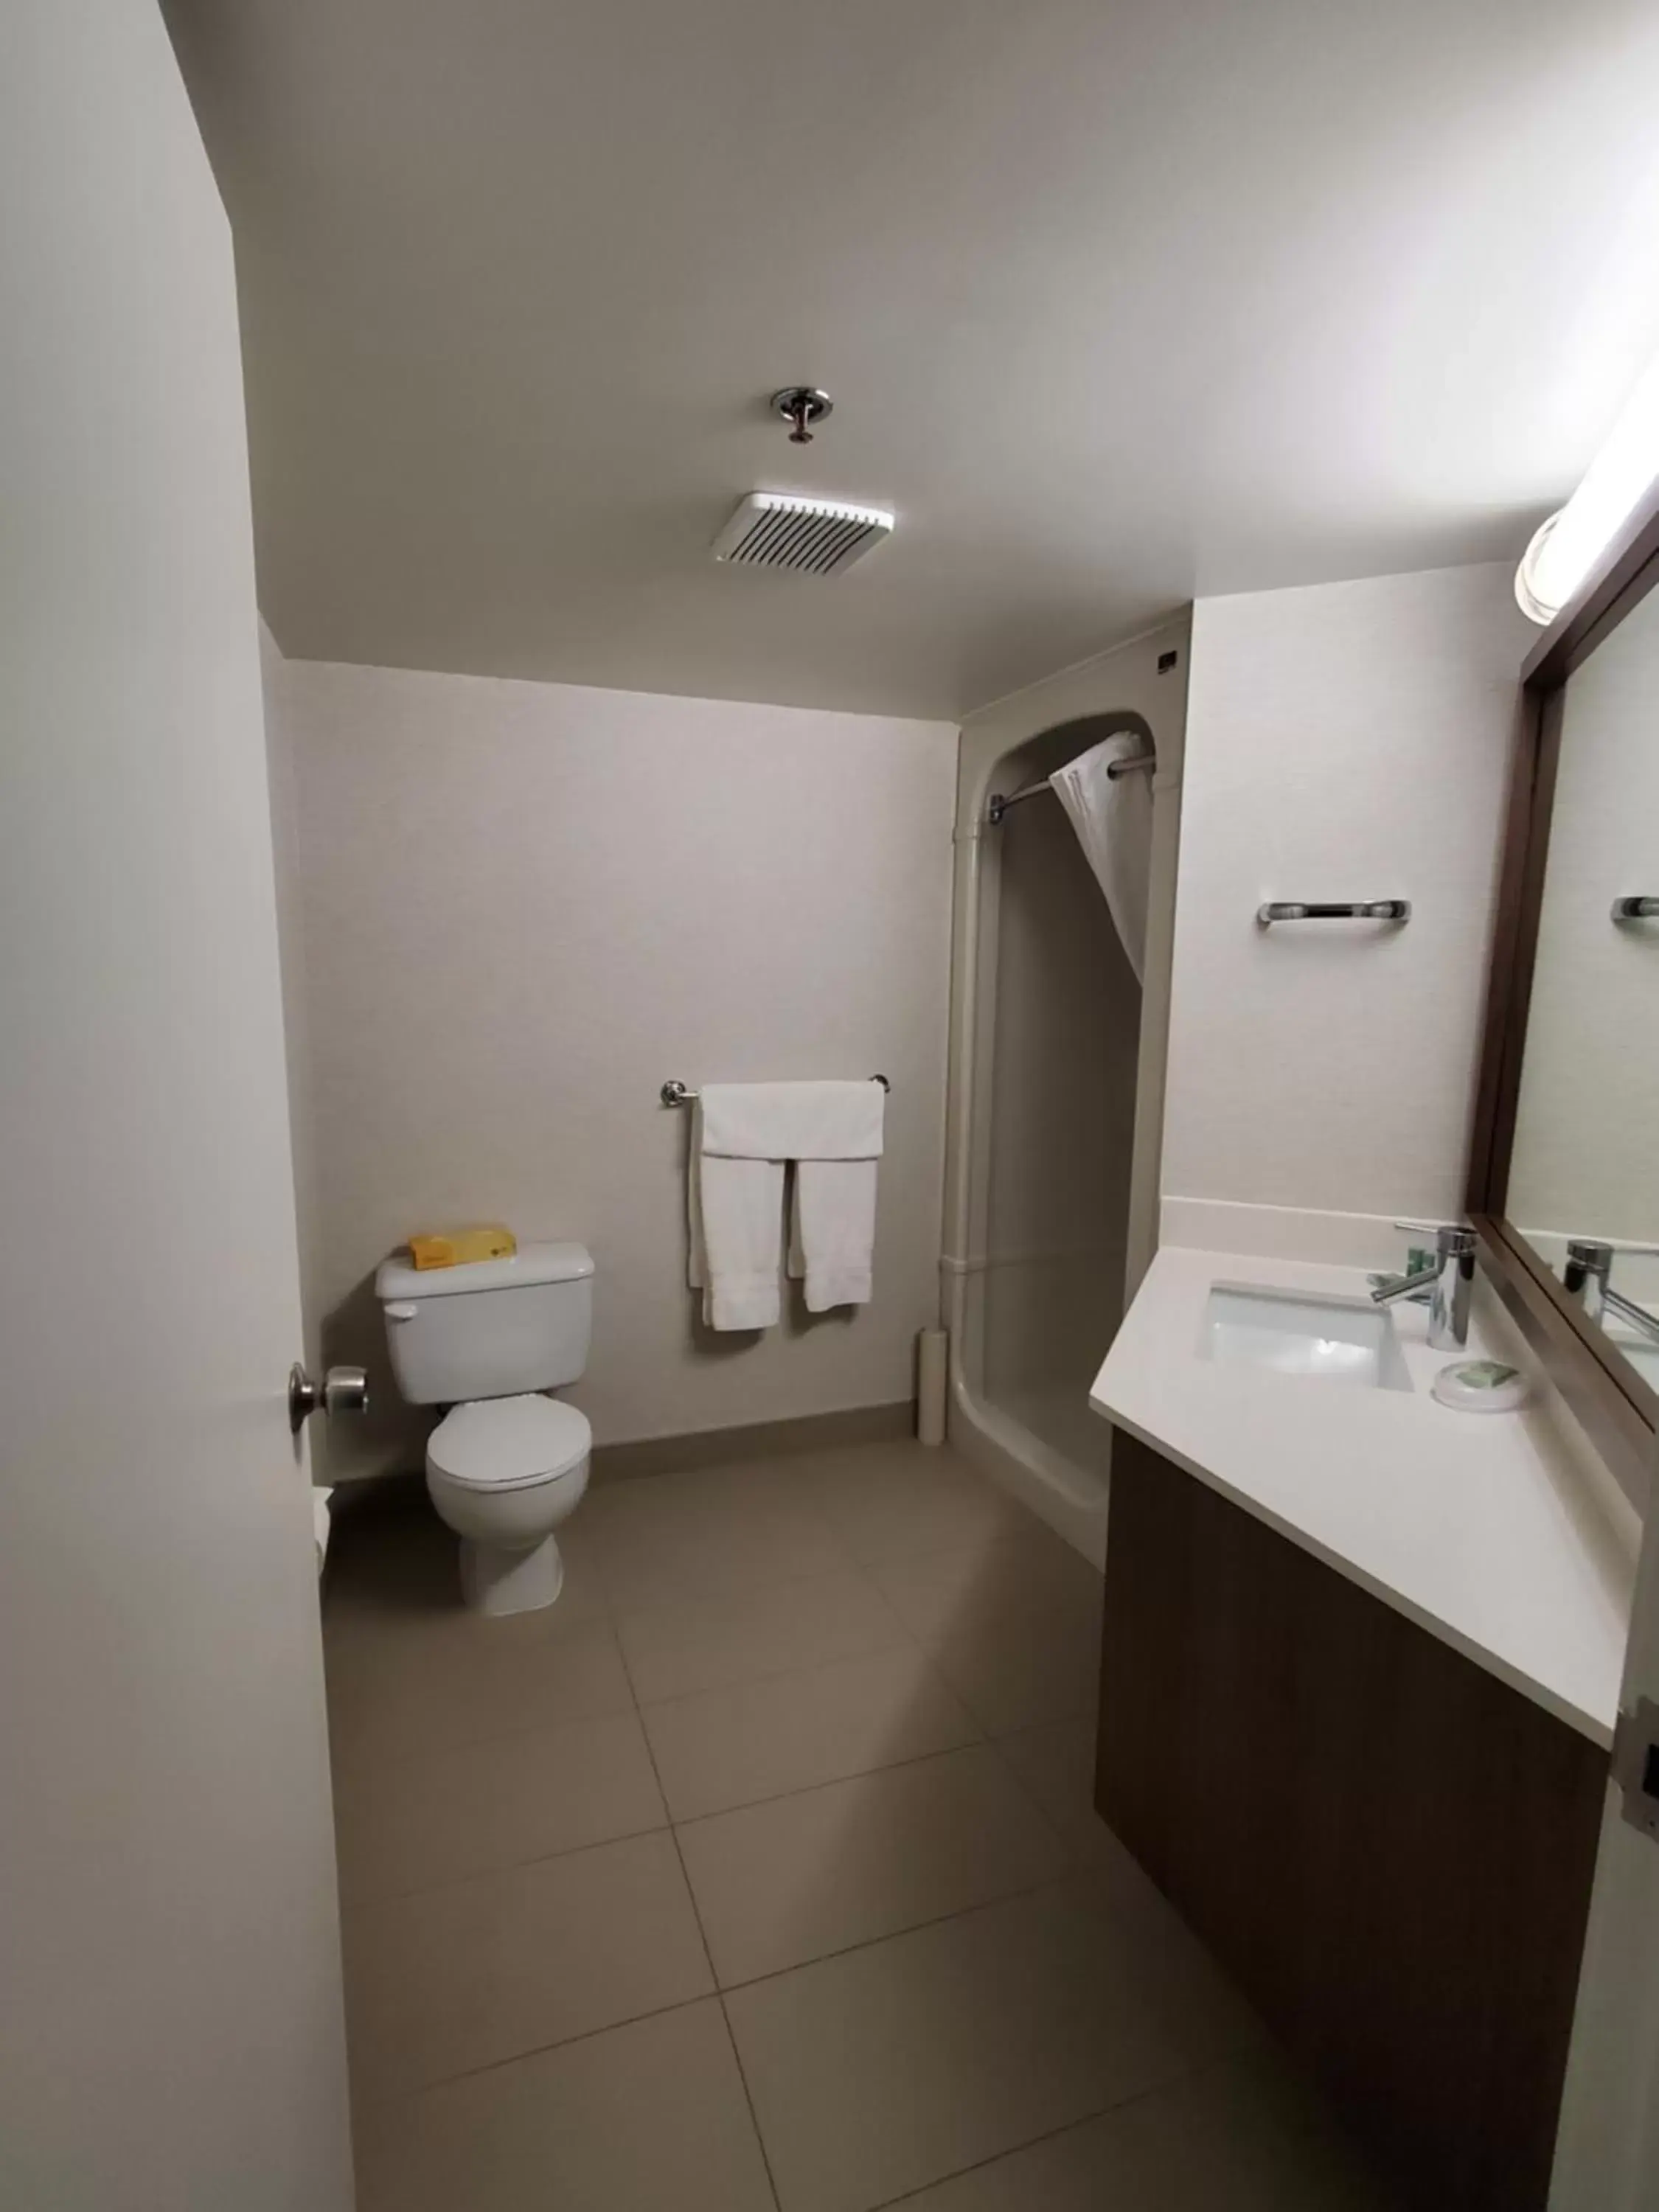 Shower, Bathroom in Best Western Hotel Brossard